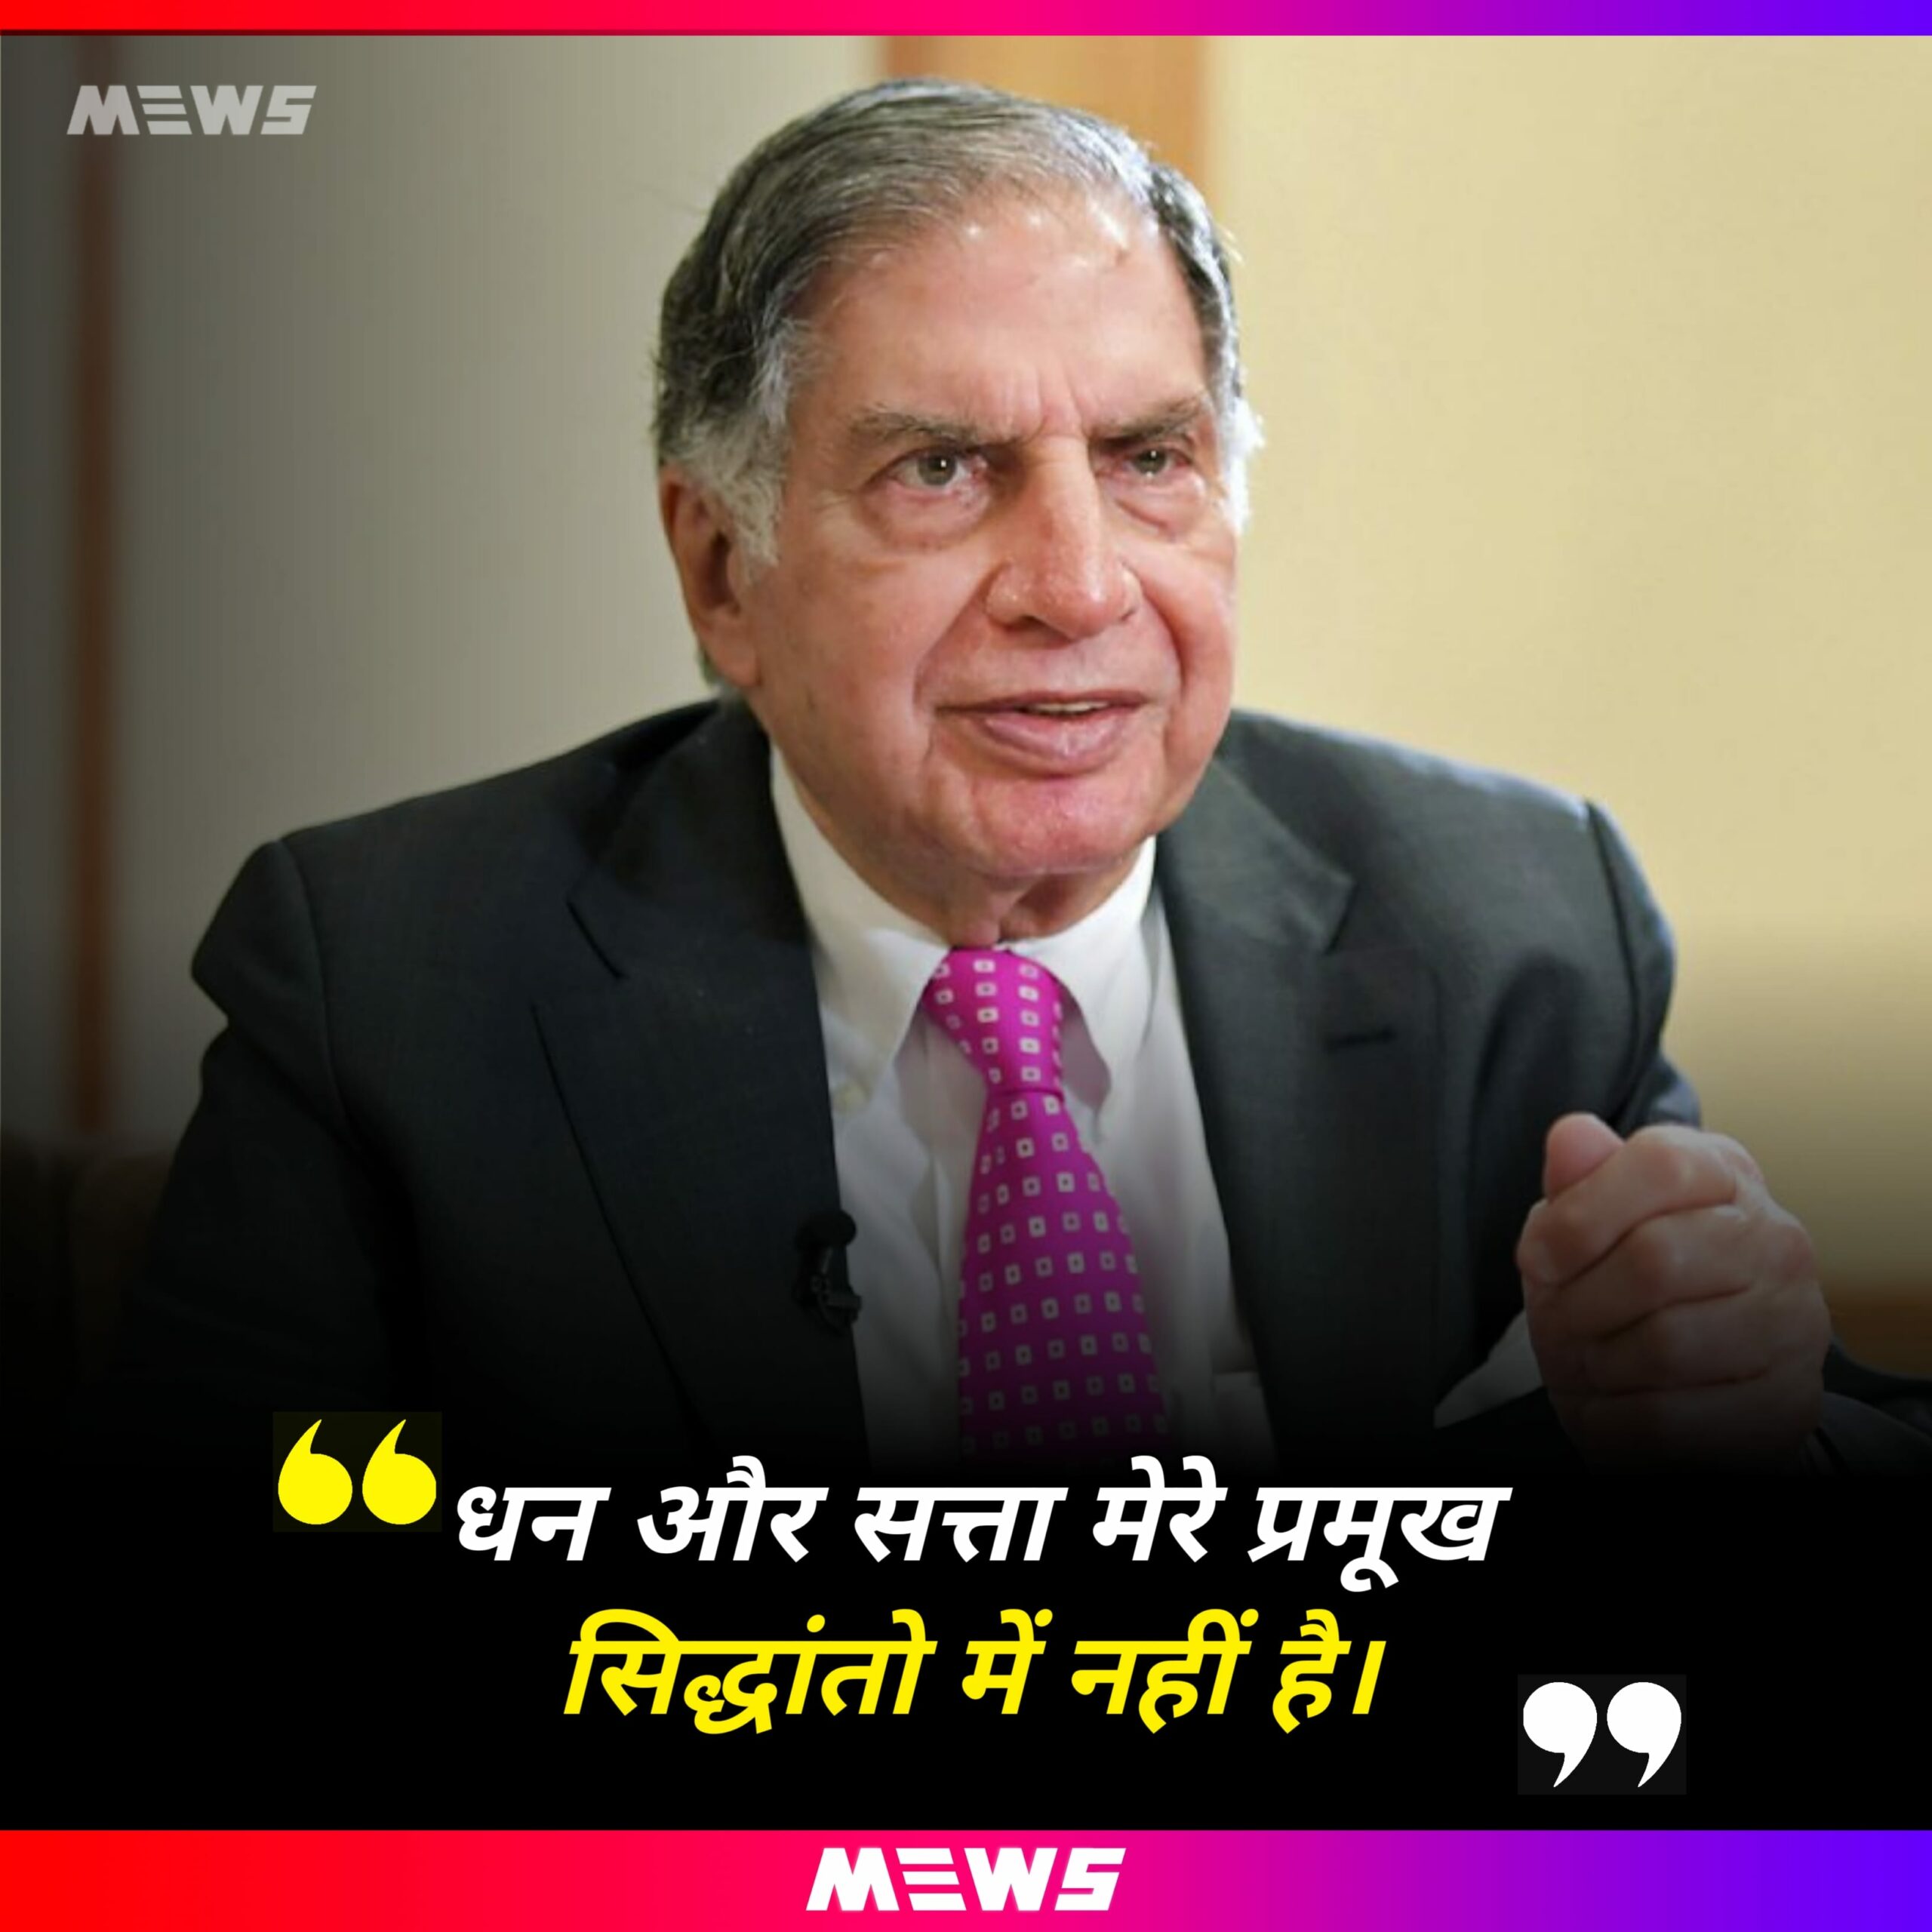 Ratan Tata Quotes Hindi